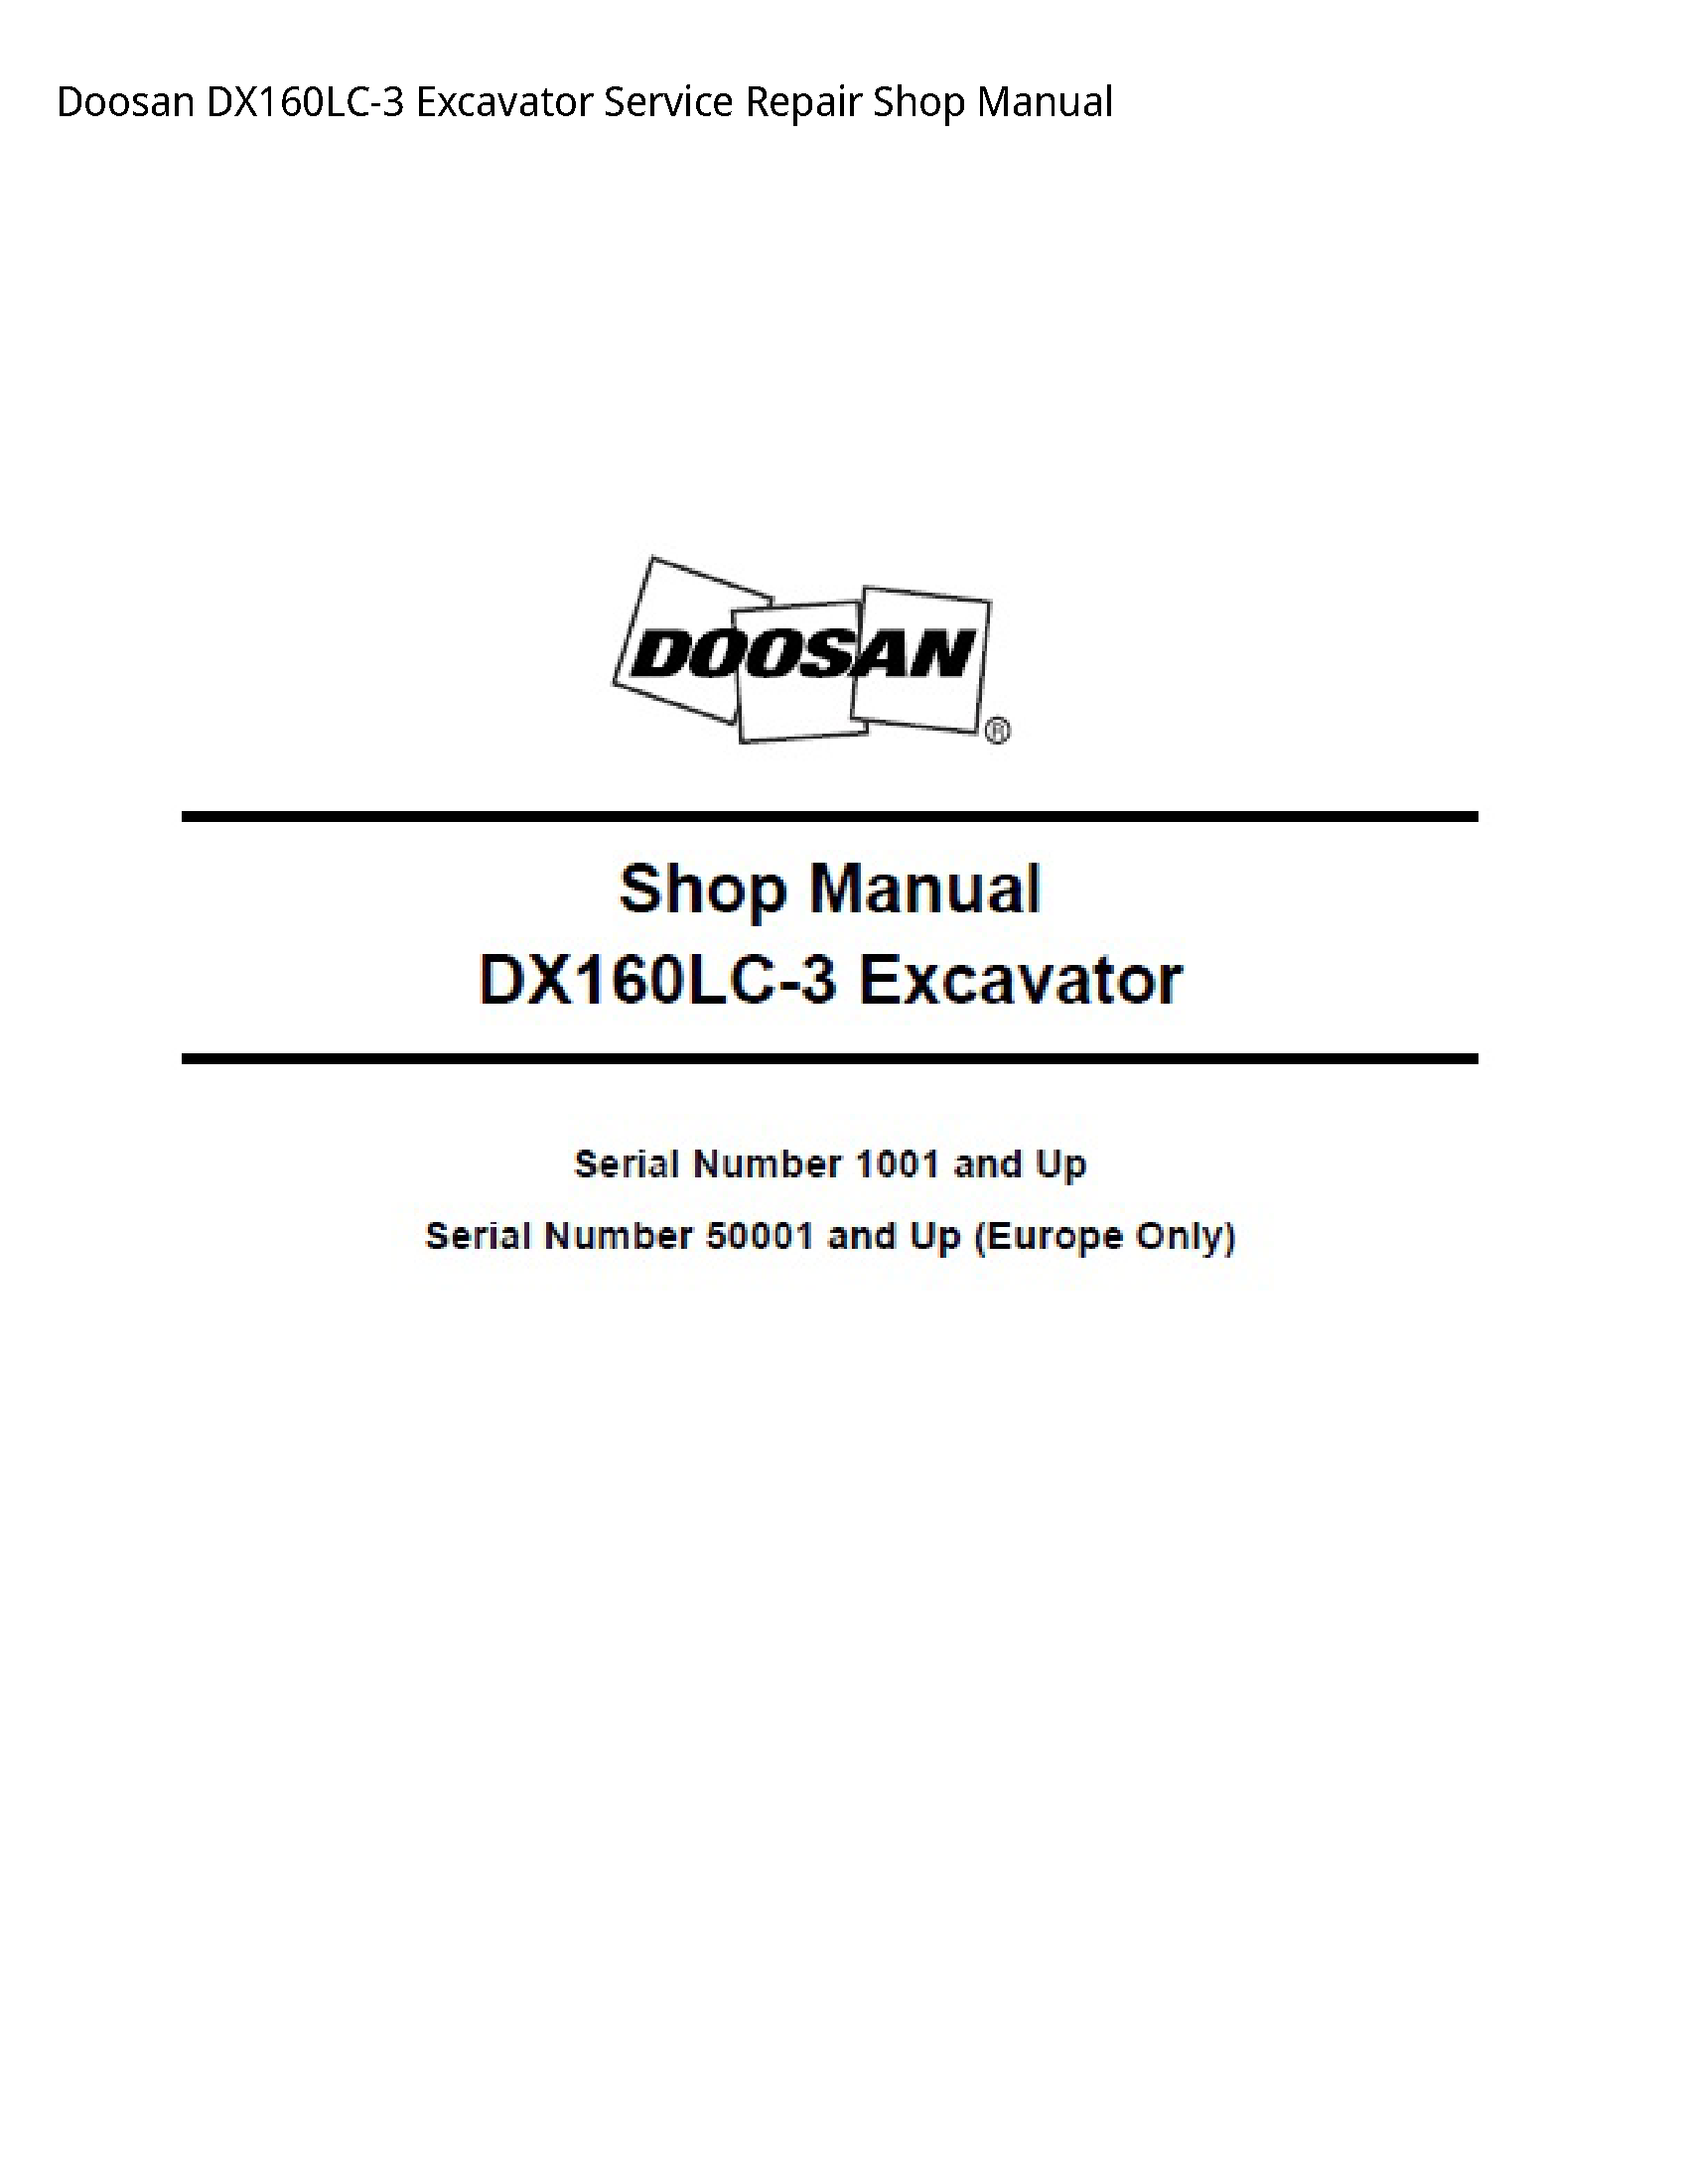 Doosan DX160LC-3 Excavator manual